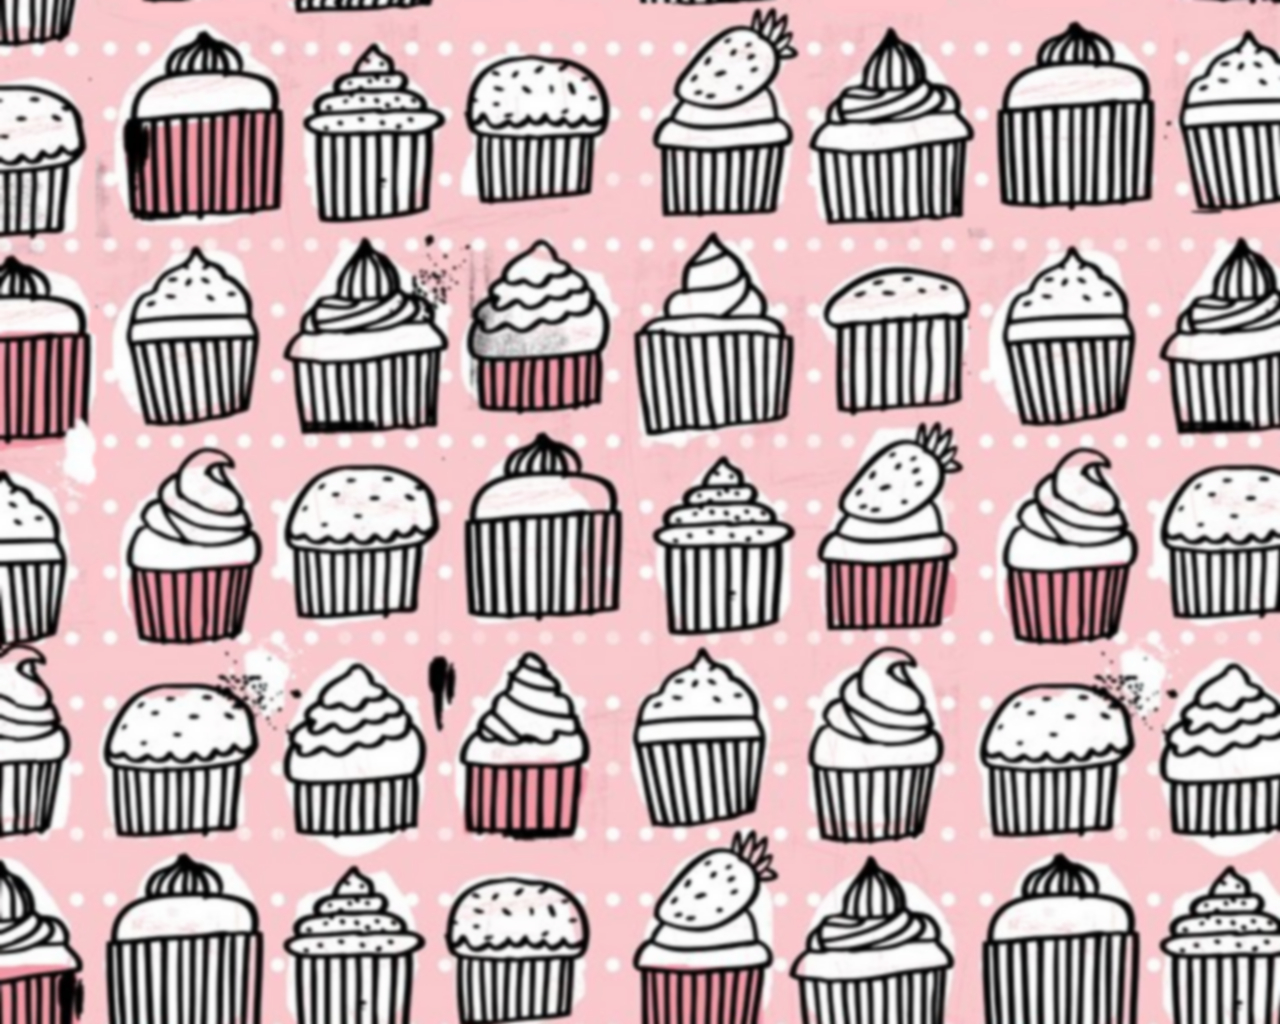 cupcakes wallpaper desktop